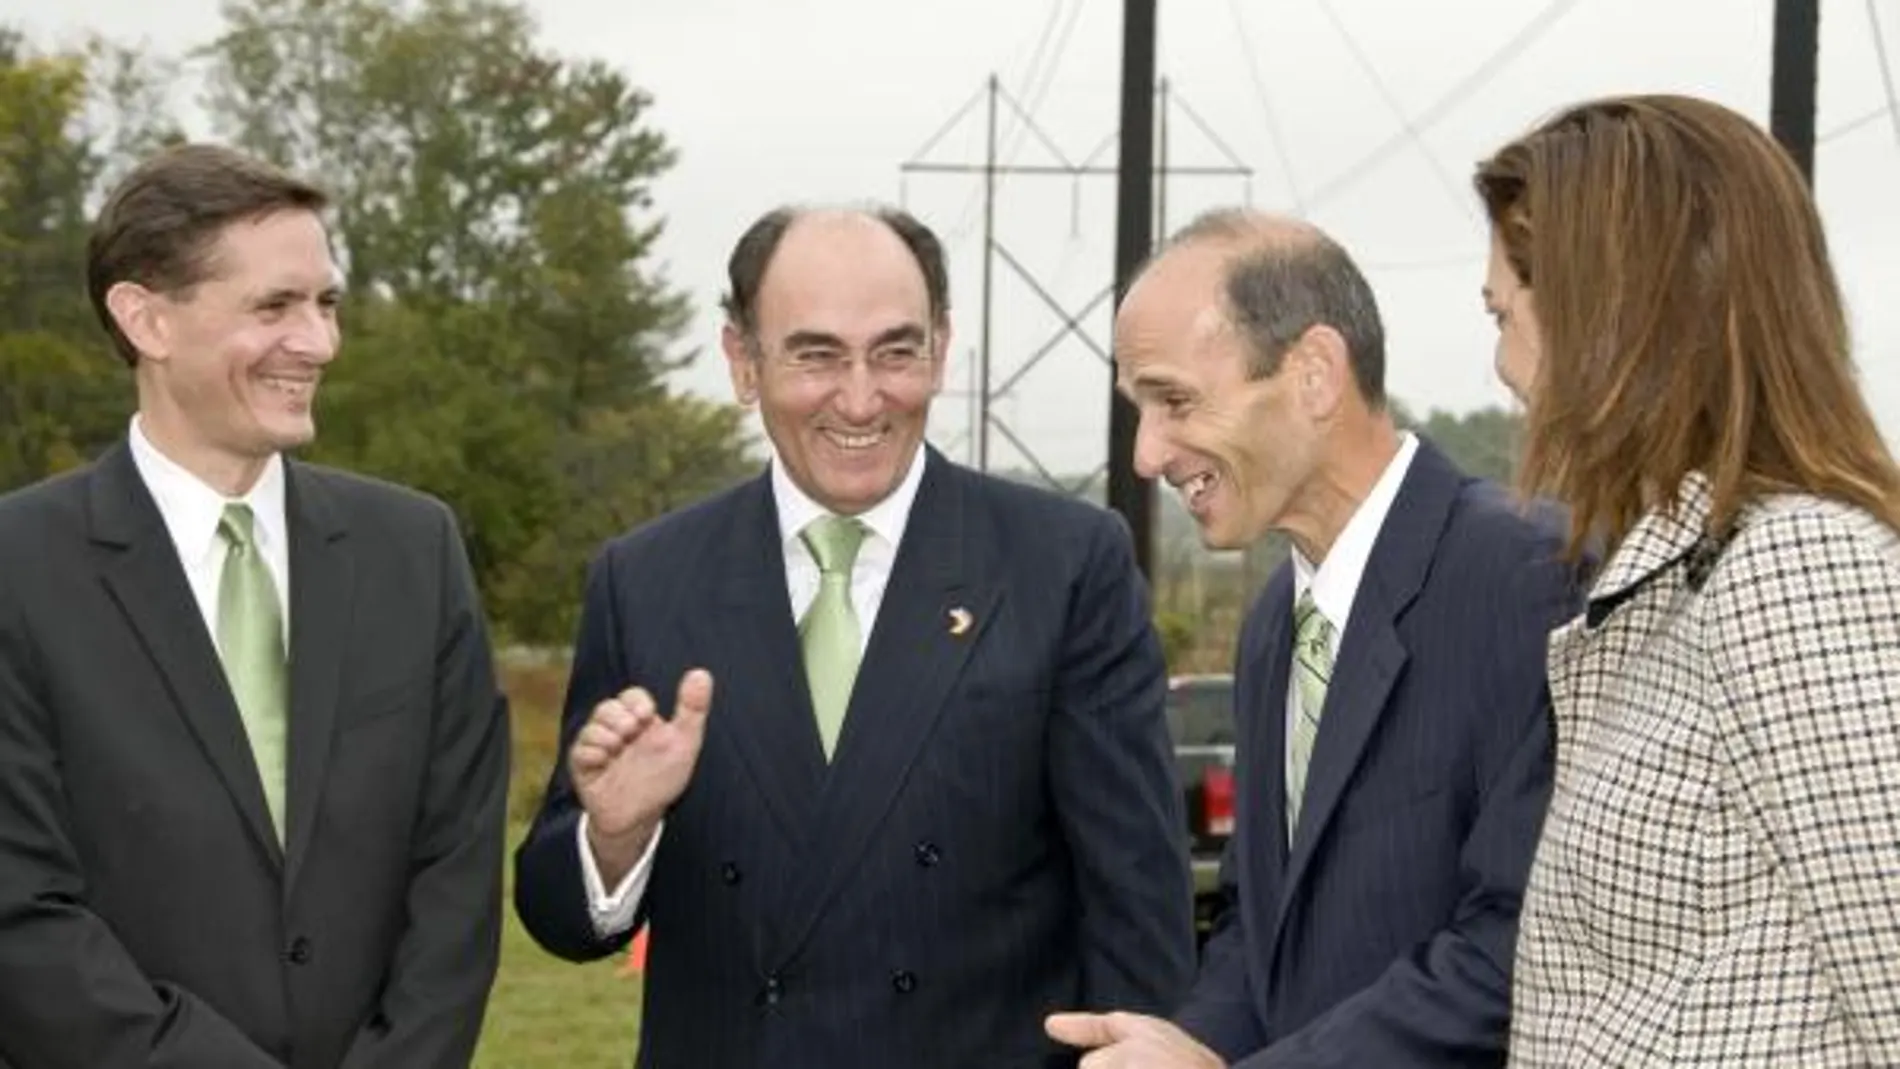 Bob Kump, Ignacio Sánchez Galán, el Gobernador de Maine y Amparo Moraleda